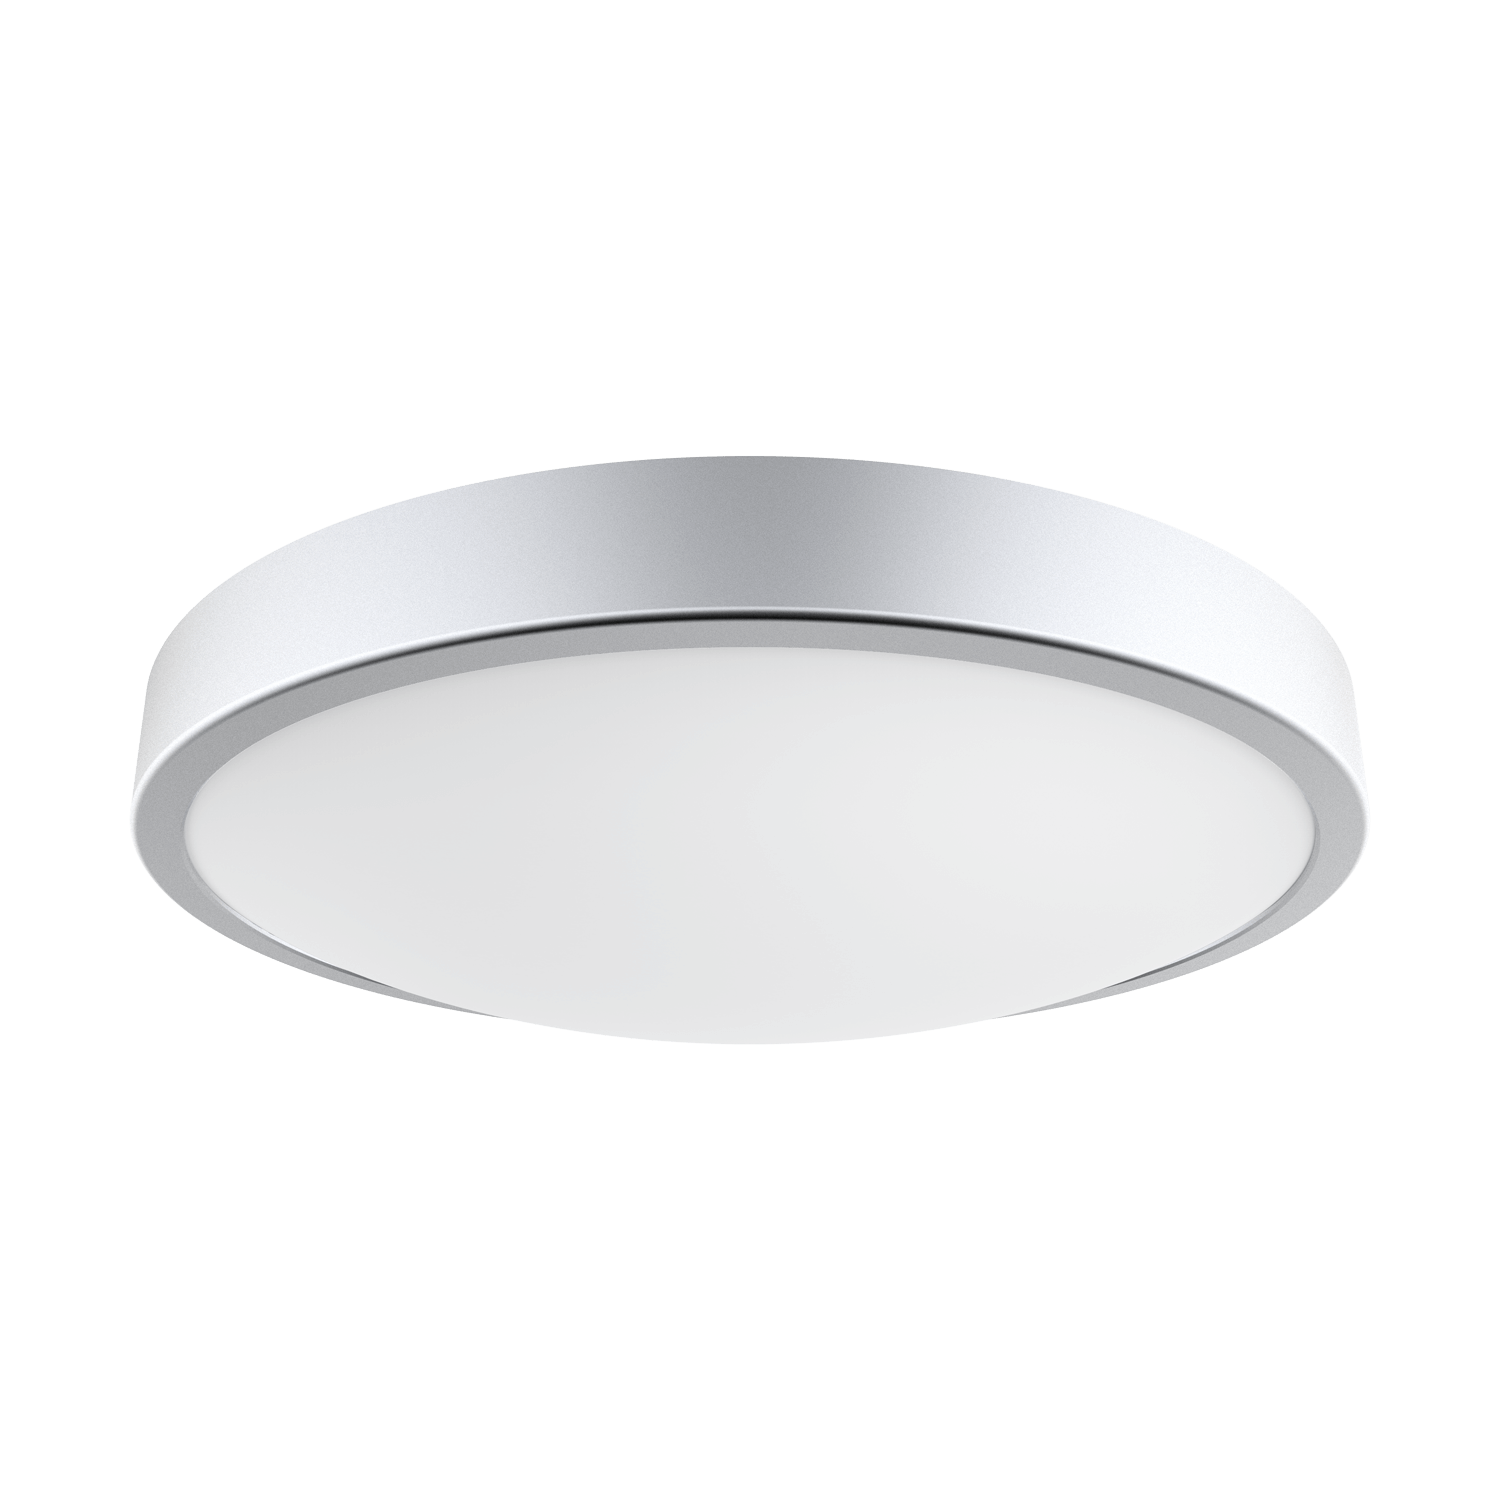 Silver Rim LED Ceiling Light